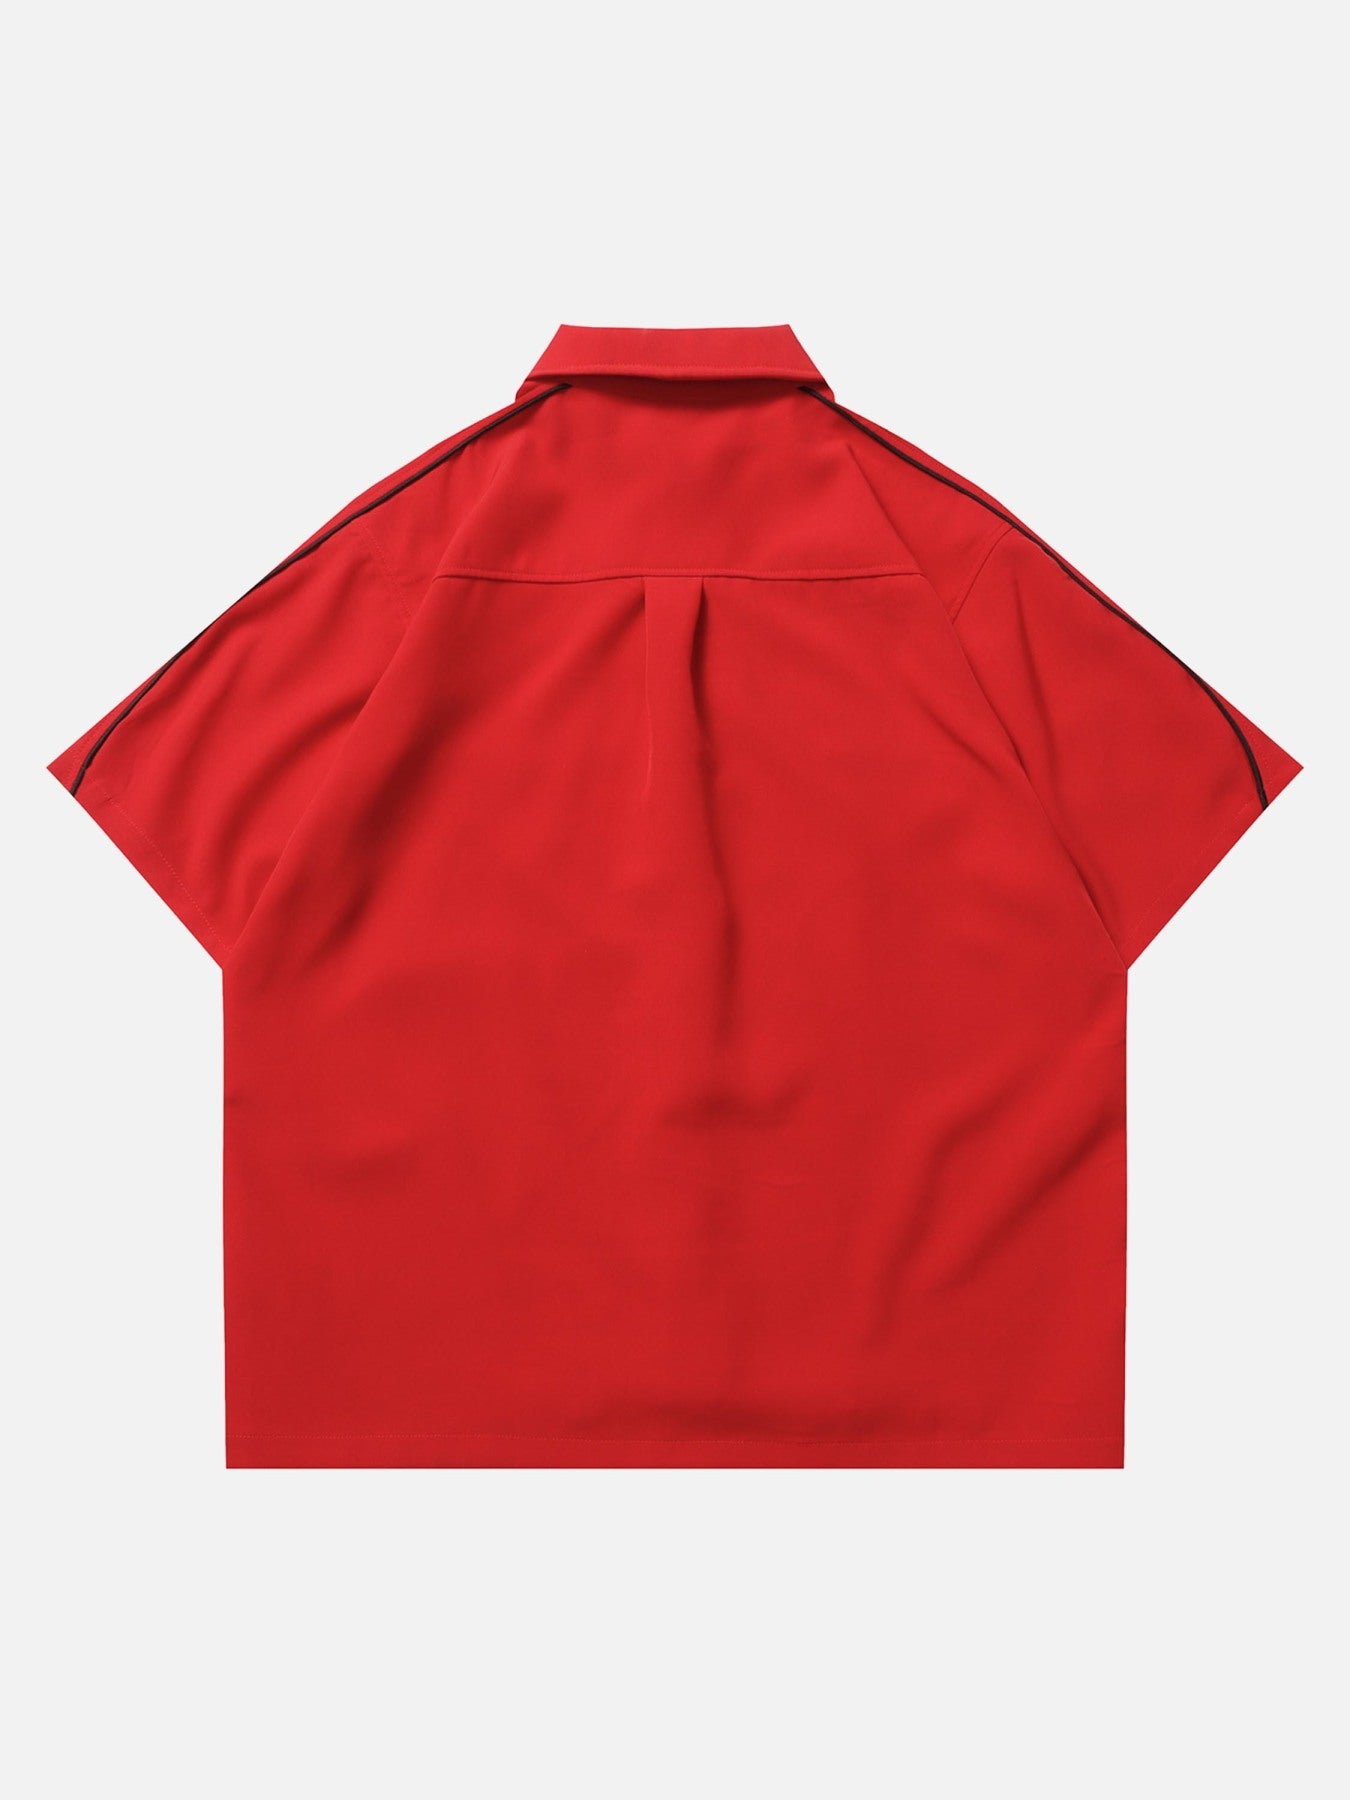 Thesupermade Star Zipper Design Shirt -1575